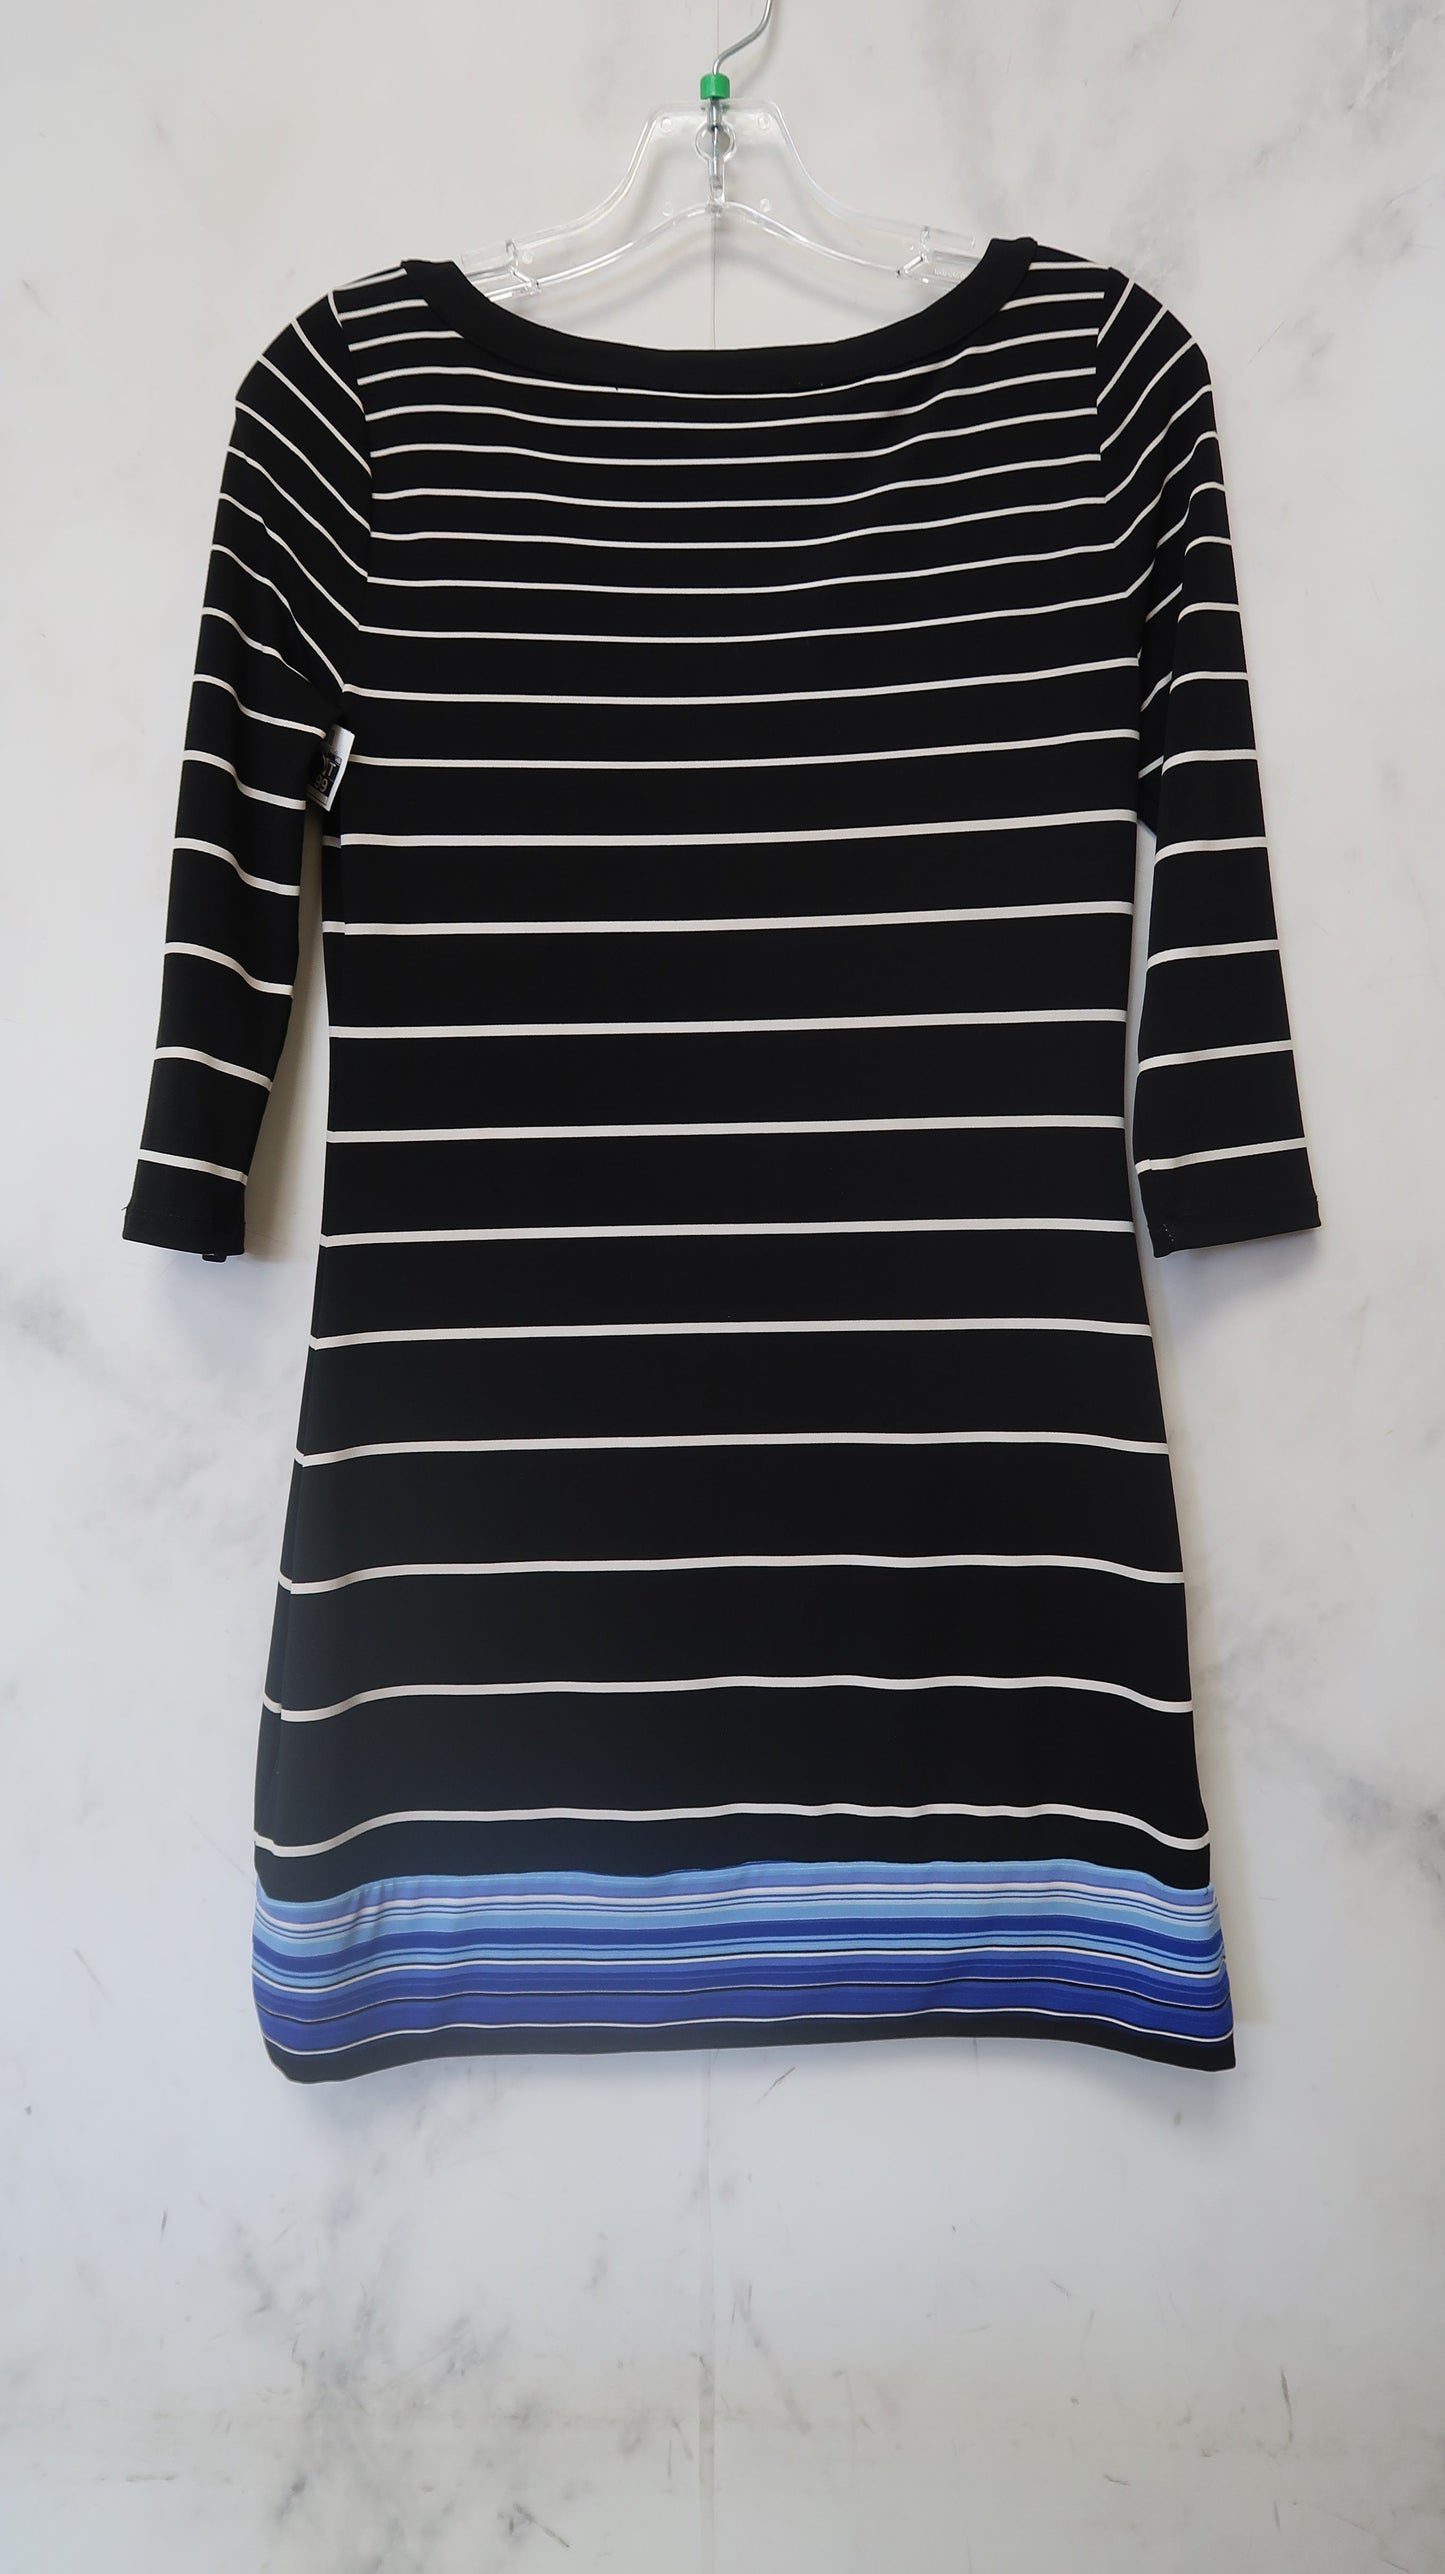 Dress Casual Midi By White House Black Market  Size: Xxs